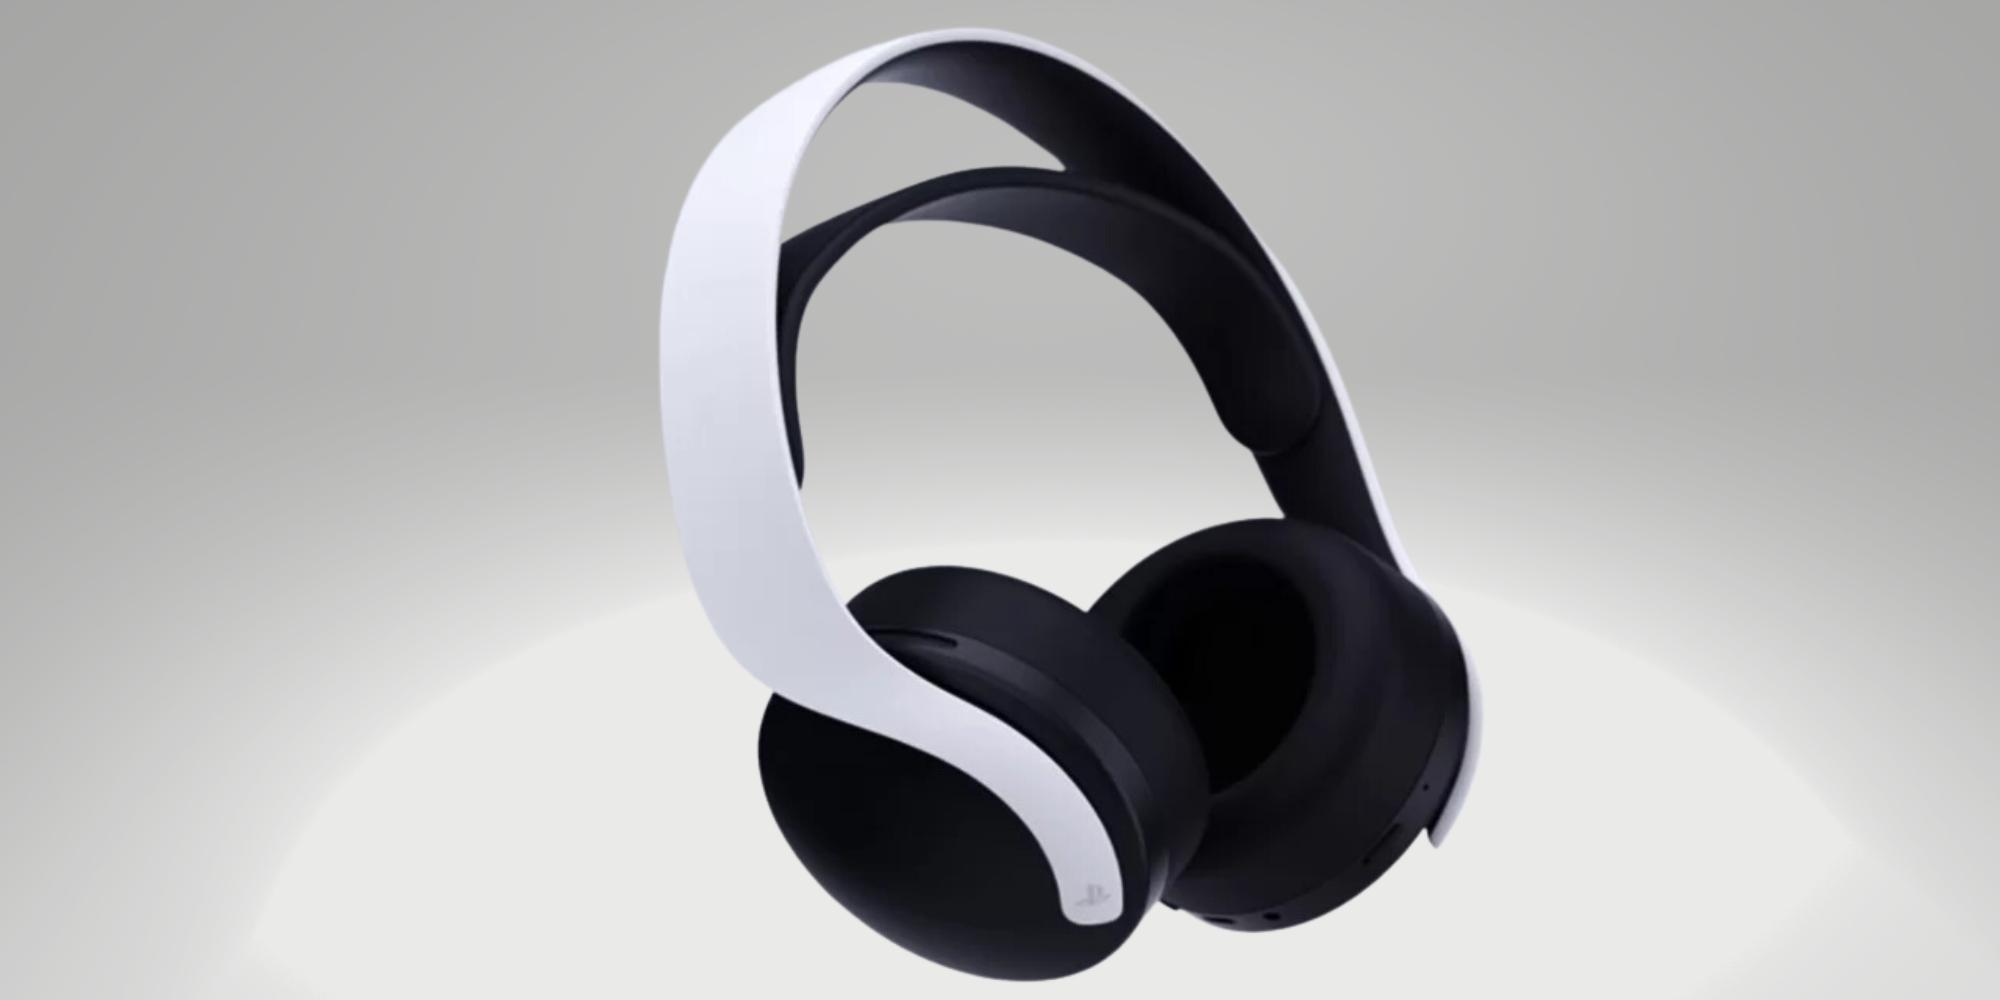 Cover Image for A inovação nos novos headsets Pulse para PlayStation 5